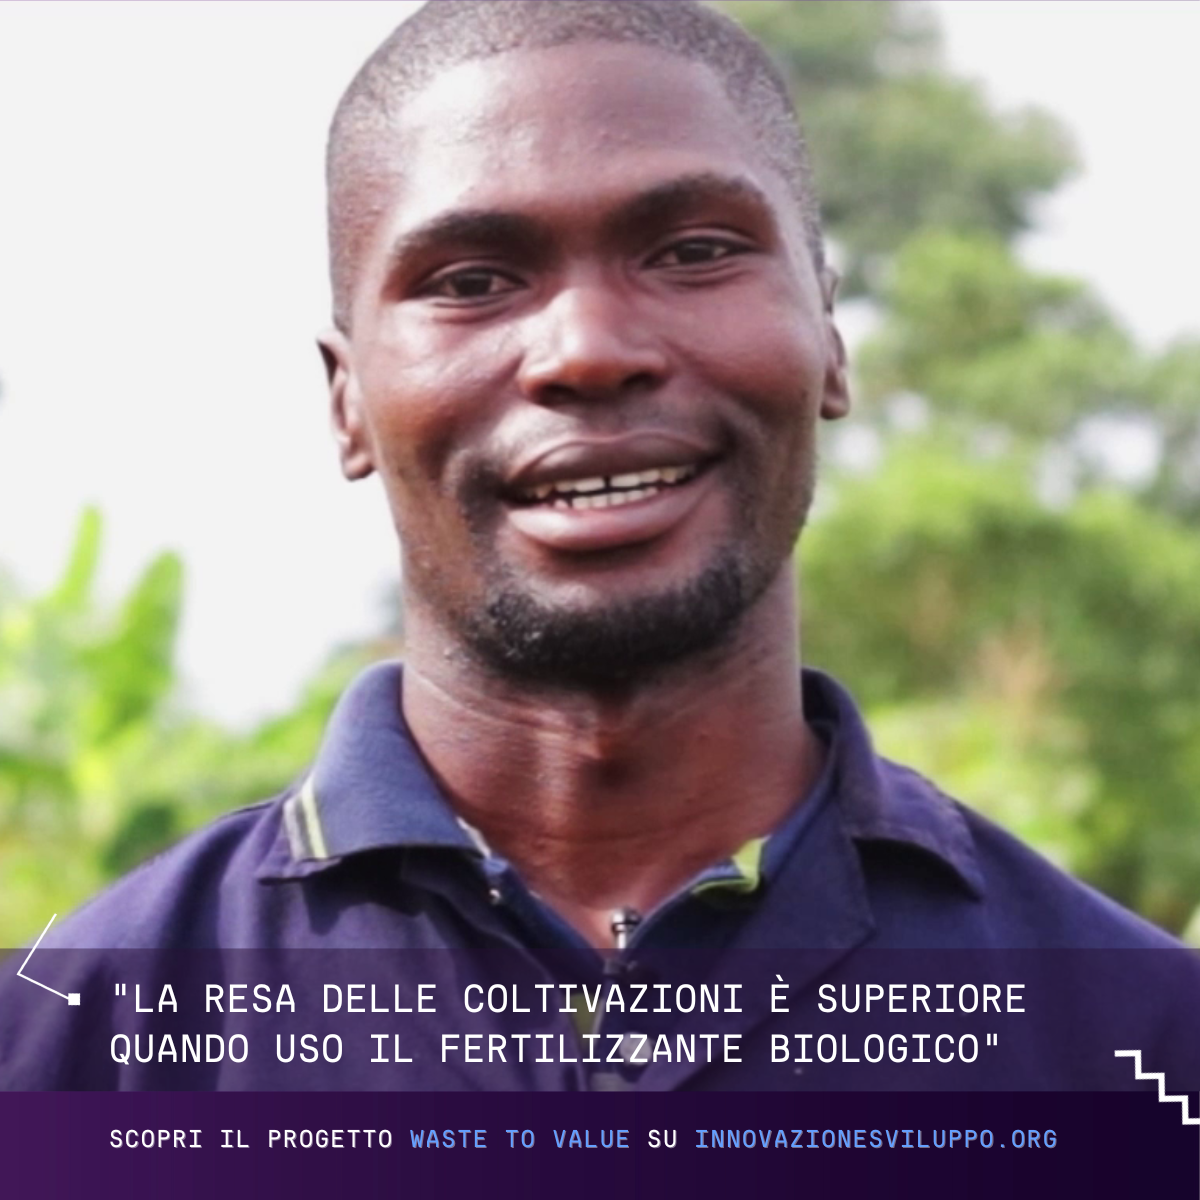 Video storie: Agricoltura biologica  in Uganda